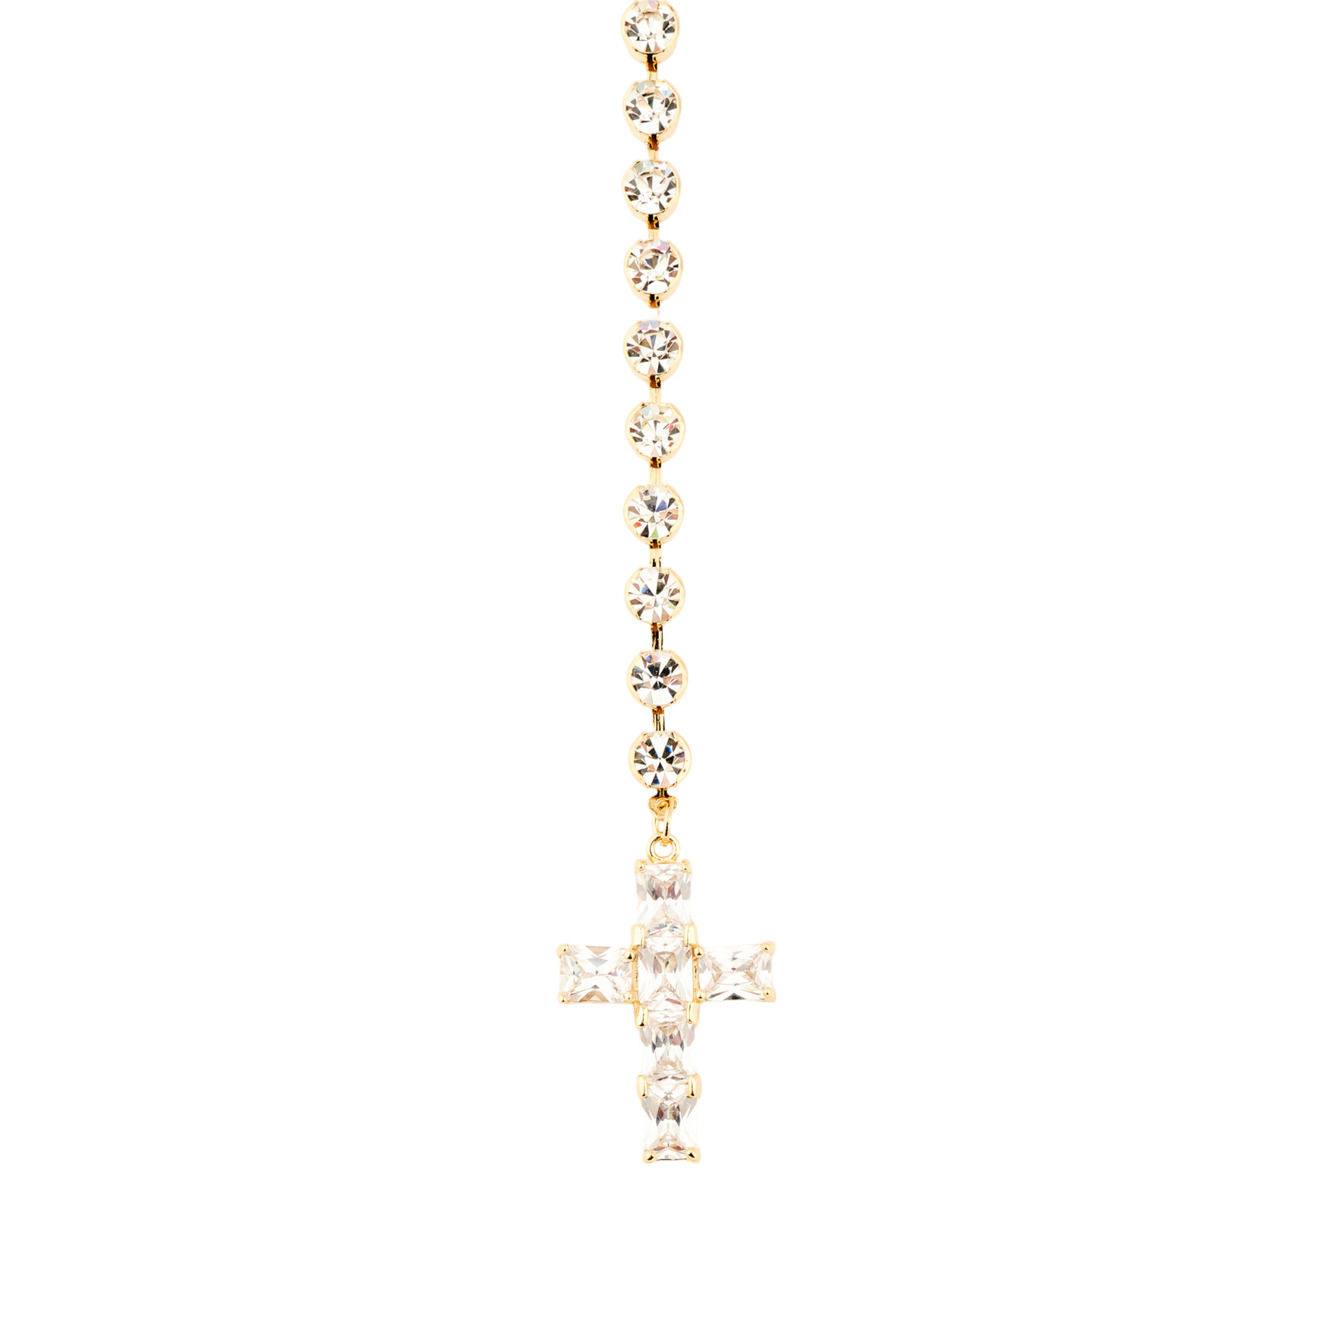 Herald Percy Золотистый сотуар с белыми кристаллами и подвеской крестом herald percy золотистый браслет цепь с кристаллами